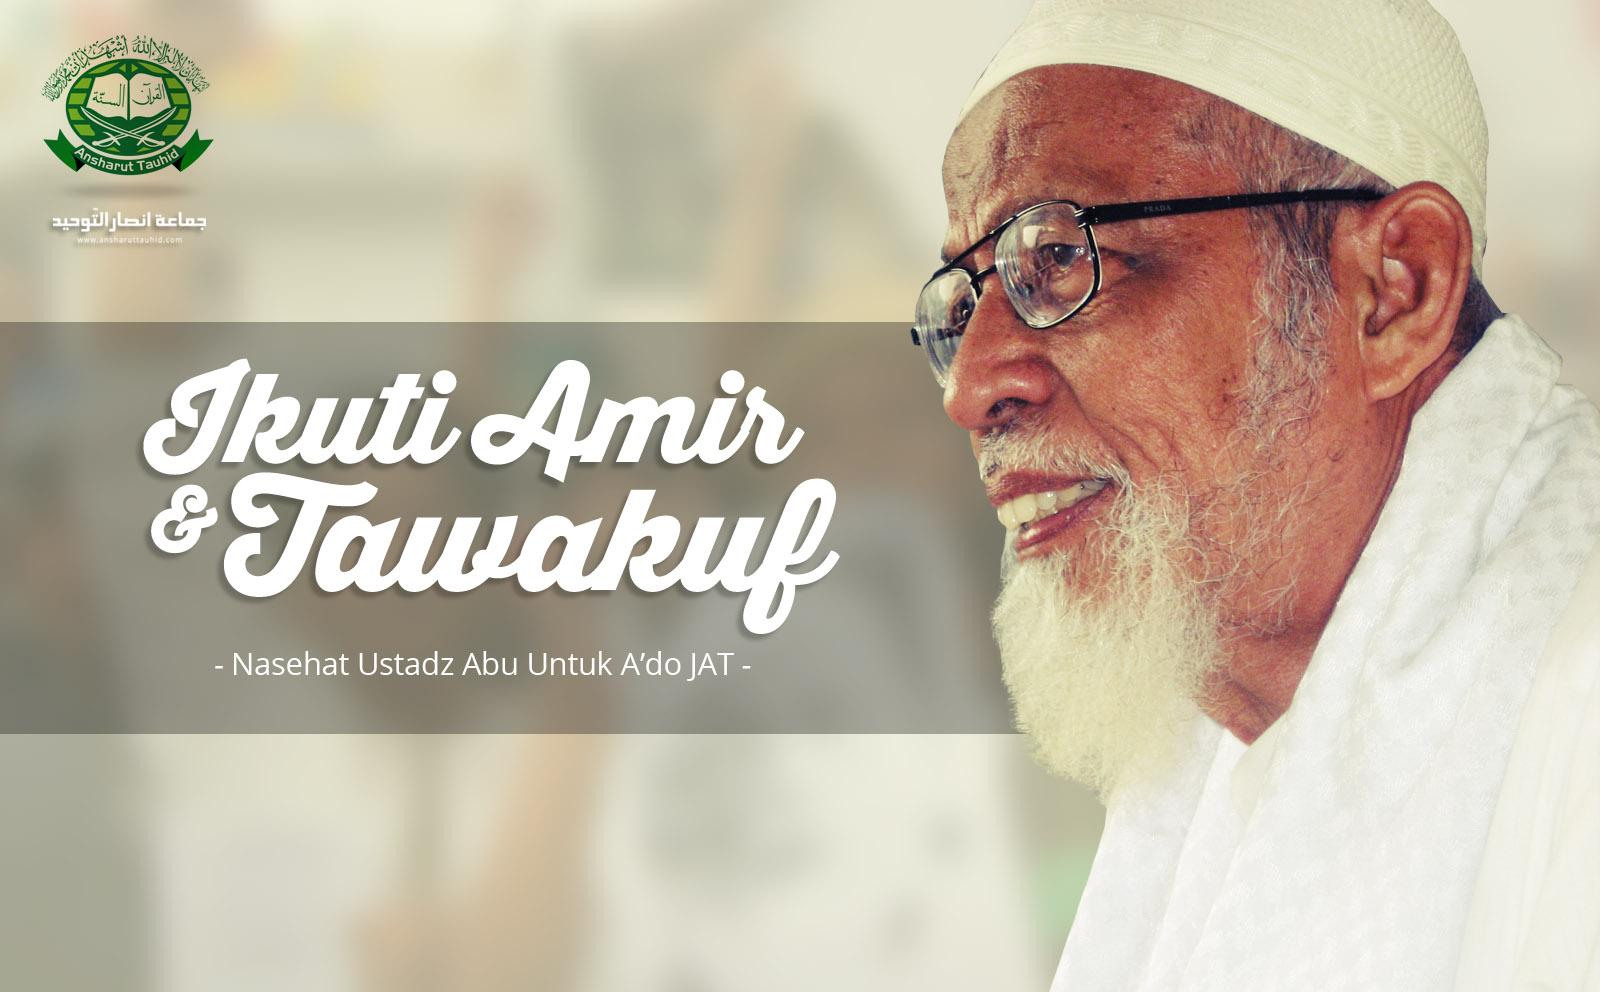 Nasihat Ustadz ABB Untuk A'dho : Ikuti Amir dan Tawakuf